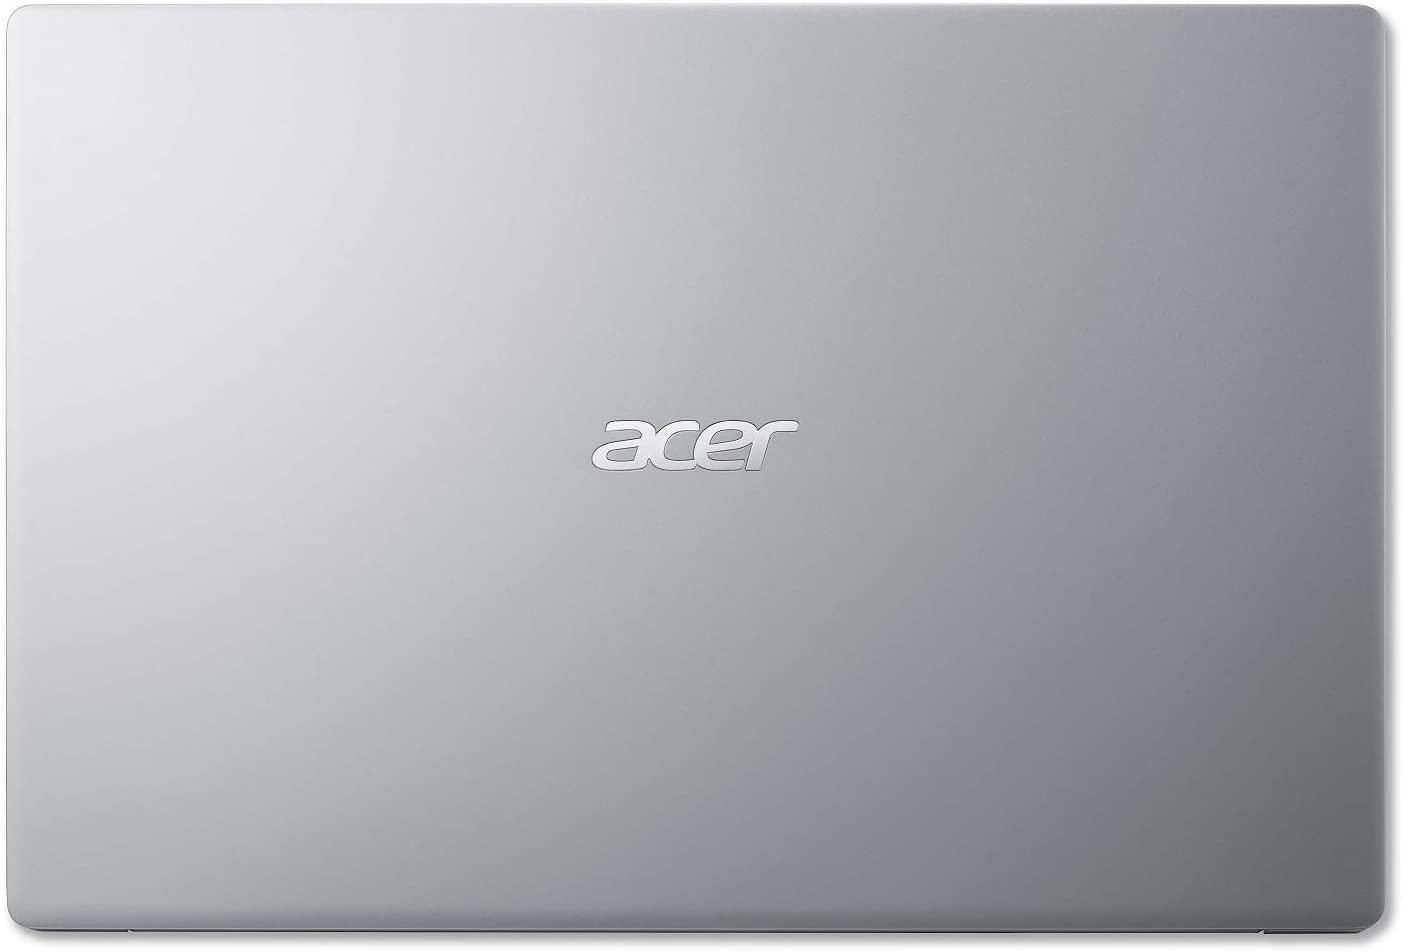  Acer Swift 3 - Computadora portátil delgada y ligera, 14  pulgadas, alta definición, IPS, AMD Ryzen 7 4700U Octa-Core con gráficos  Radeon, 8GB LPDDR4, 512GB NVMe SSD, Wi-Fi 6, KB retroiluminado